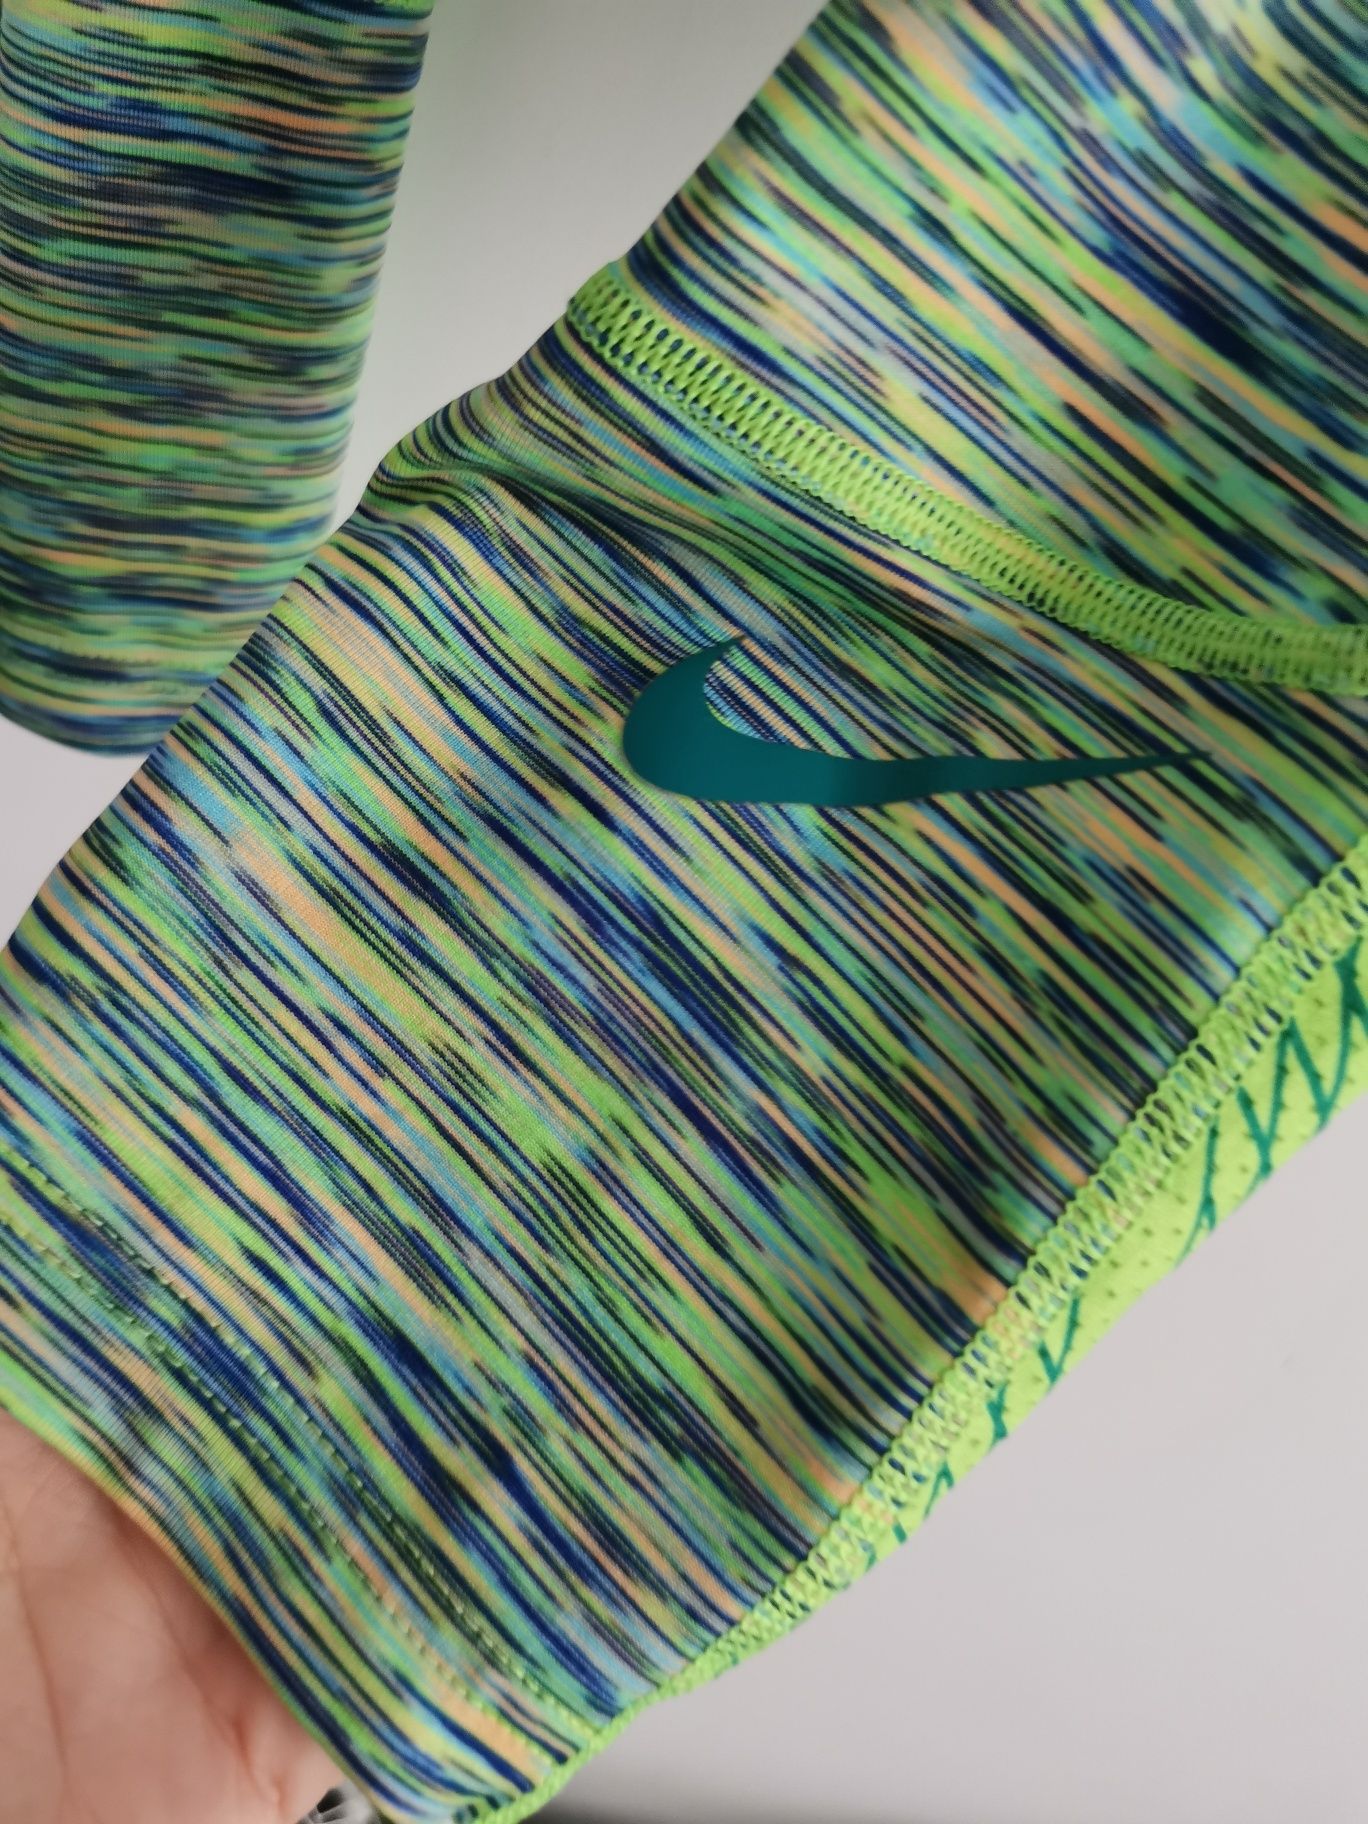 Nike Pro legginsy męskie kompresyjne dopasowane M